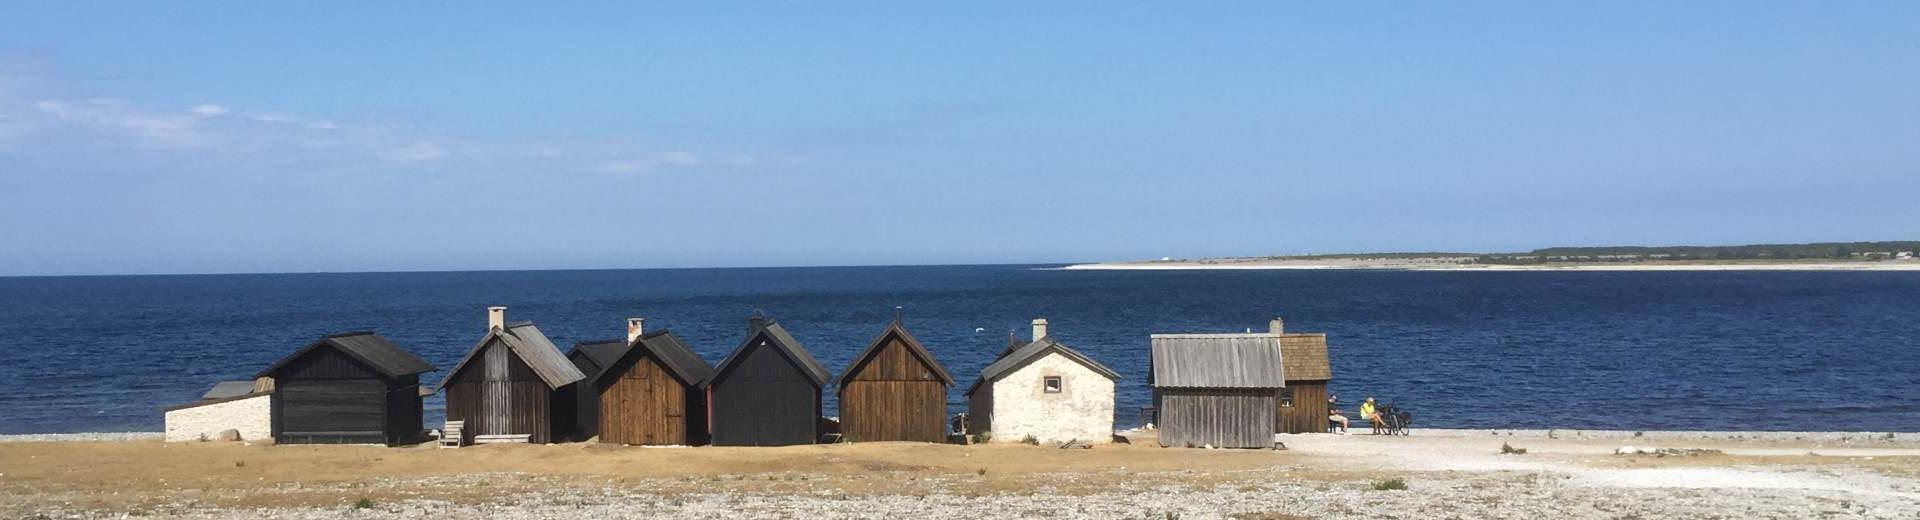 Ferienwohnungen & Ferienhäuser für Urlaub auf Gotland - Casamundo